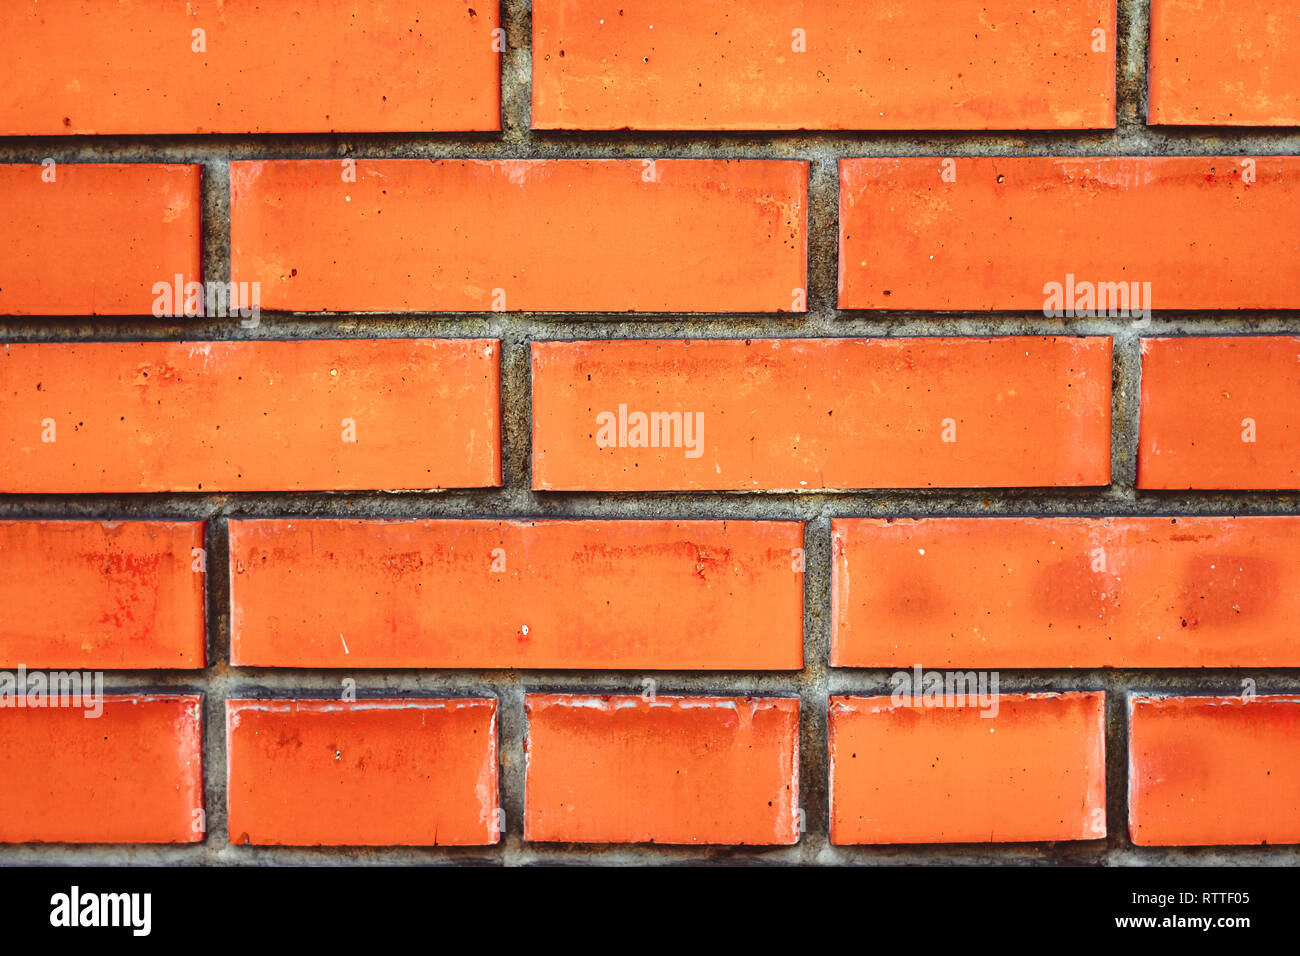 Orange felt background hi-res stock photography and images - Alamy